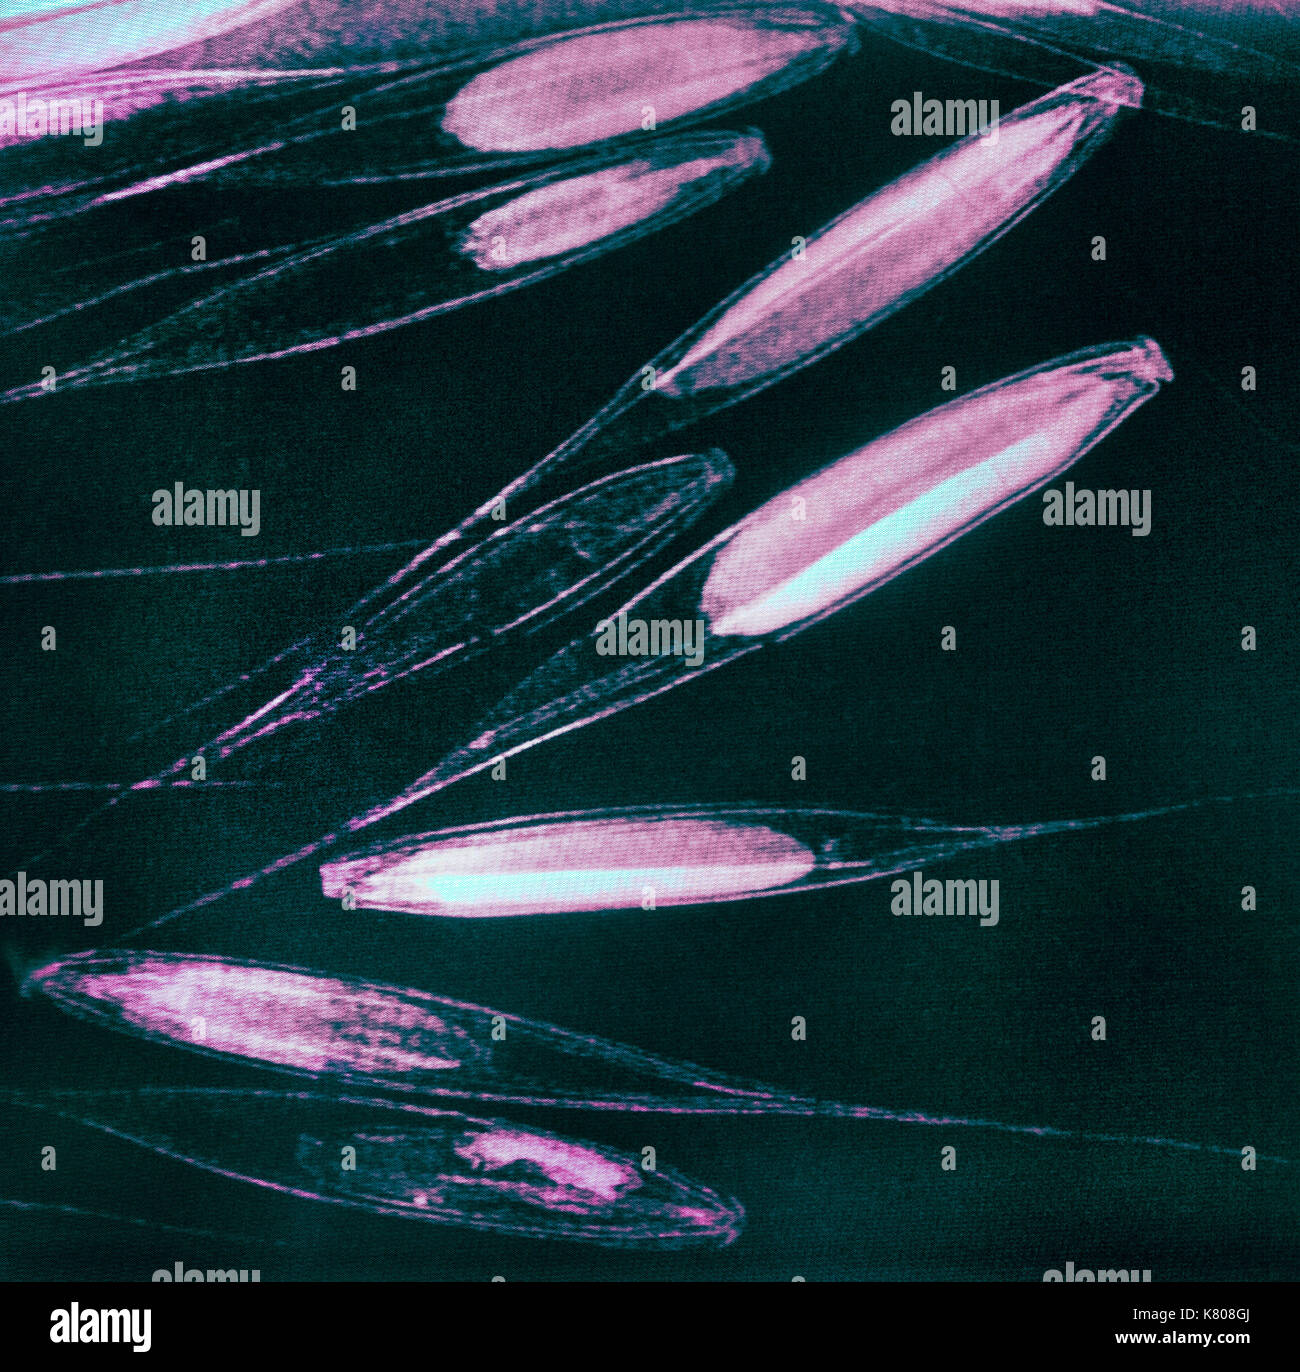 Ressemblant à un poisson sous l'eau, les rayons x de Poacées Festuca gazon de États-unis montrent la viabilité, avec certains cas d'être vide (transparent). Radiographié Banque D'Images